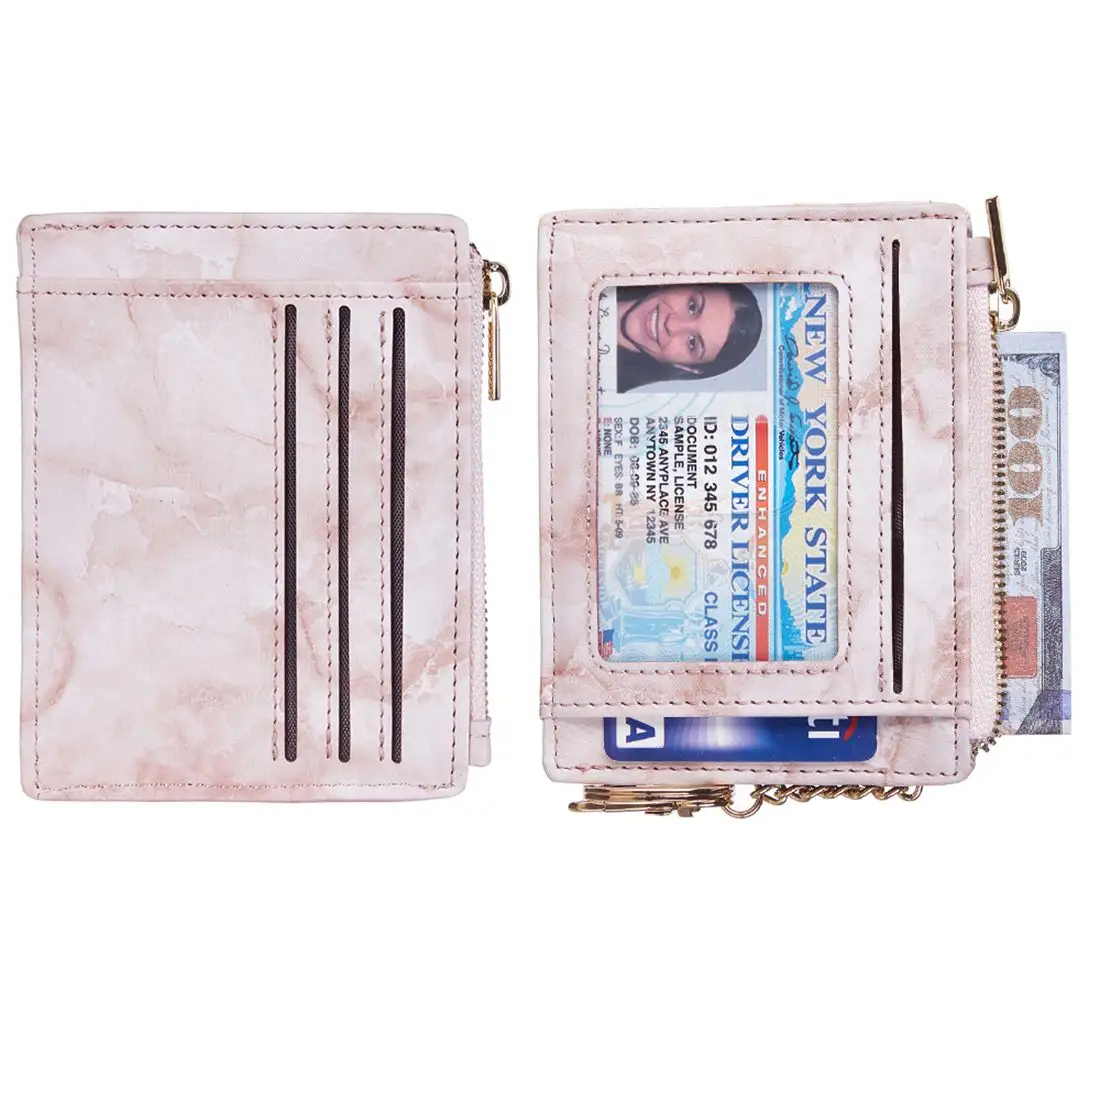 도매 가격 사용자 정의 로고 및 인쇄 슬림 가죽 체인 카드 홀더 지갑 여성